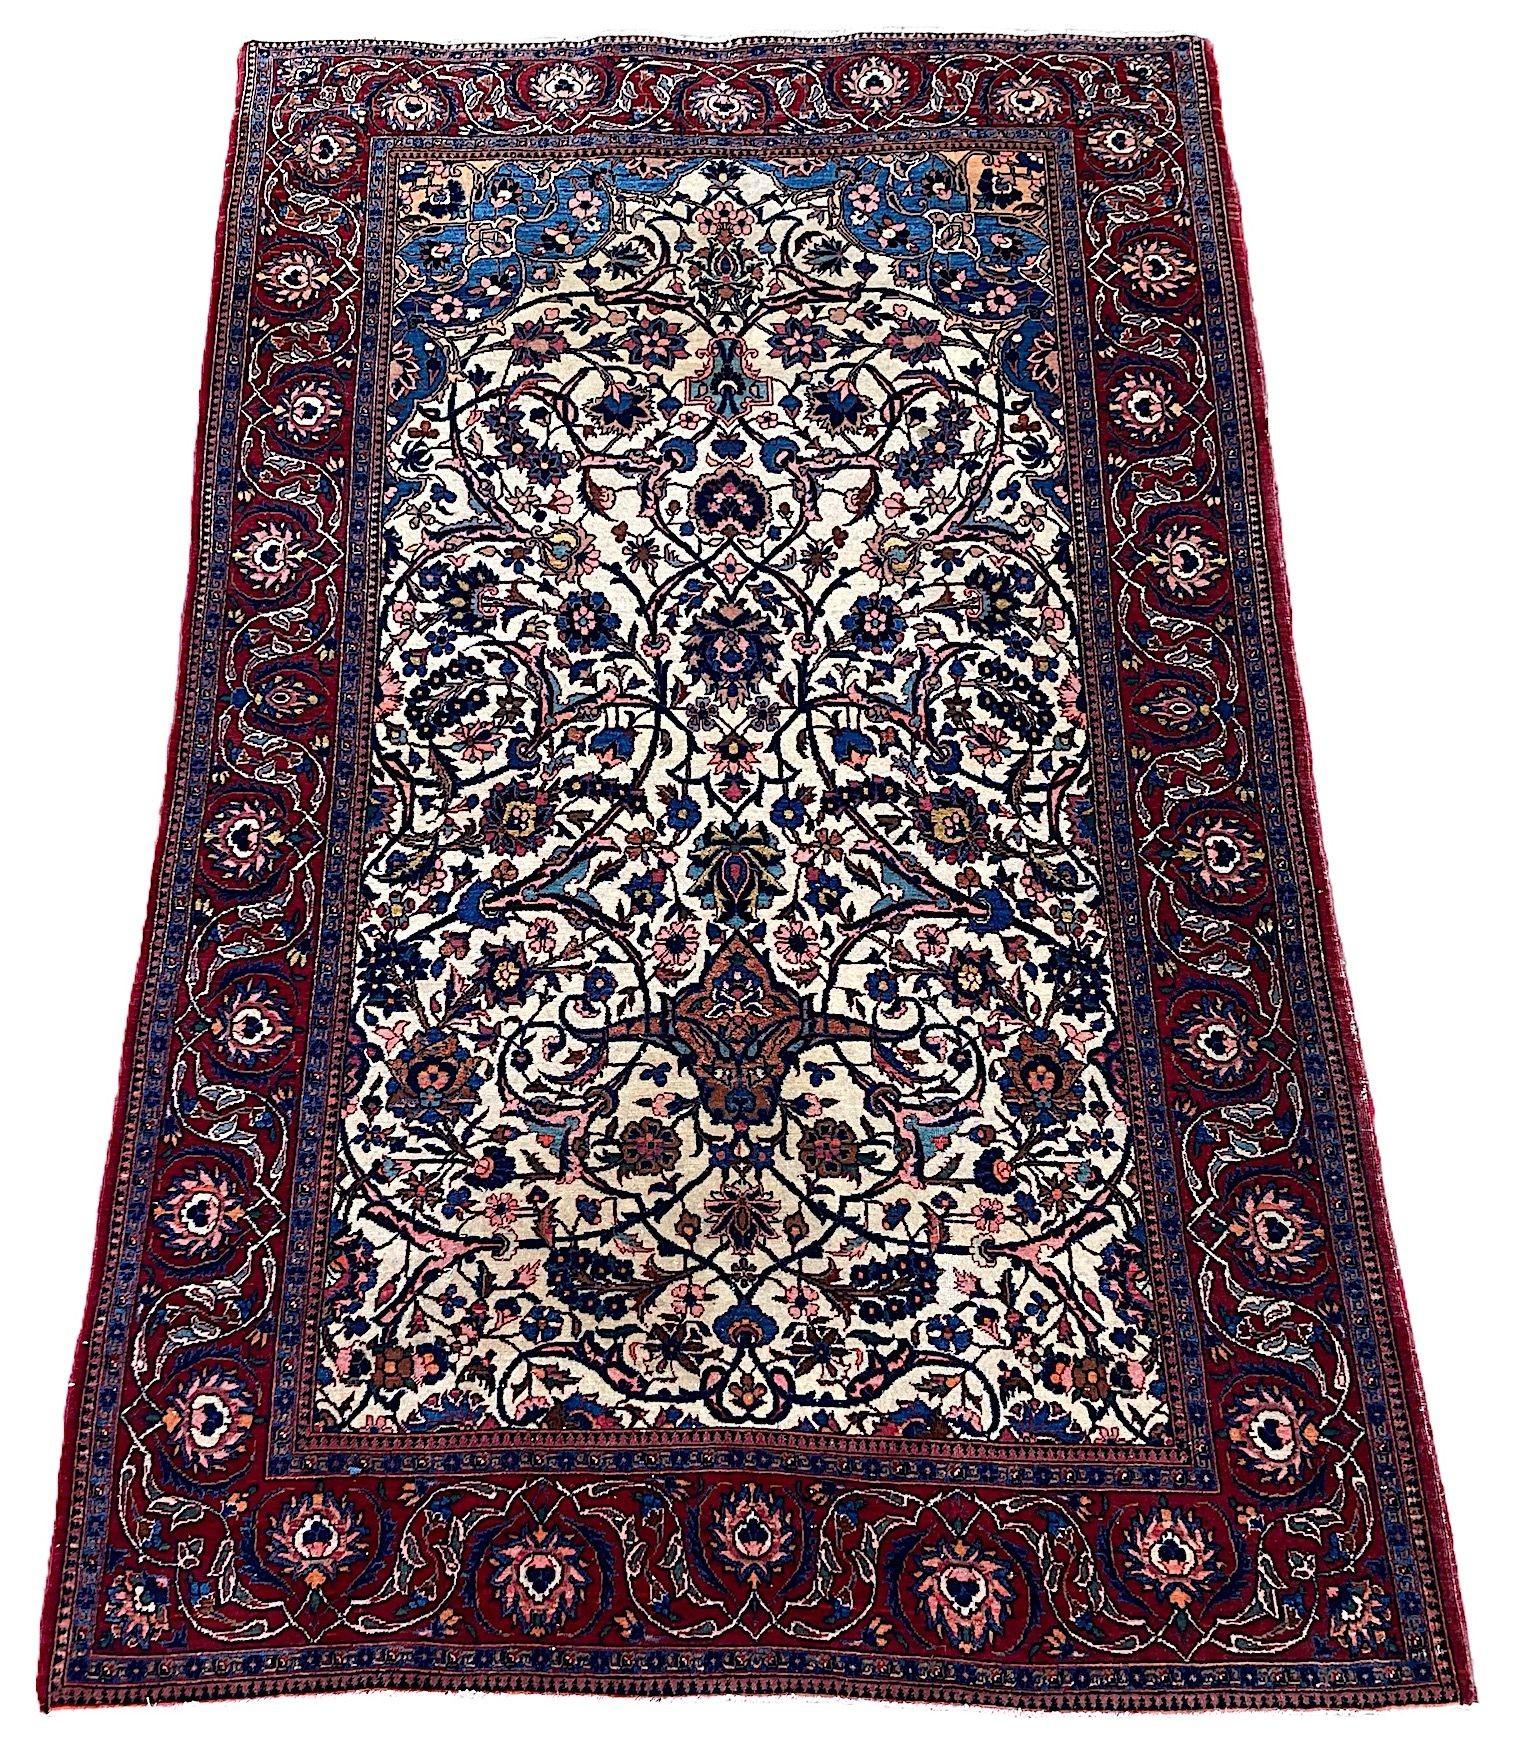 Magnifique tapis ancien de Kashan, tissé à la main vers 1920. Le tapis est orné d'un décor de grandes têtes de fleurs et de palmettes reliées par des lianes et des arabesques sur un champ ivoire peu commun et une bordure rouge. Un dessin élégant aux